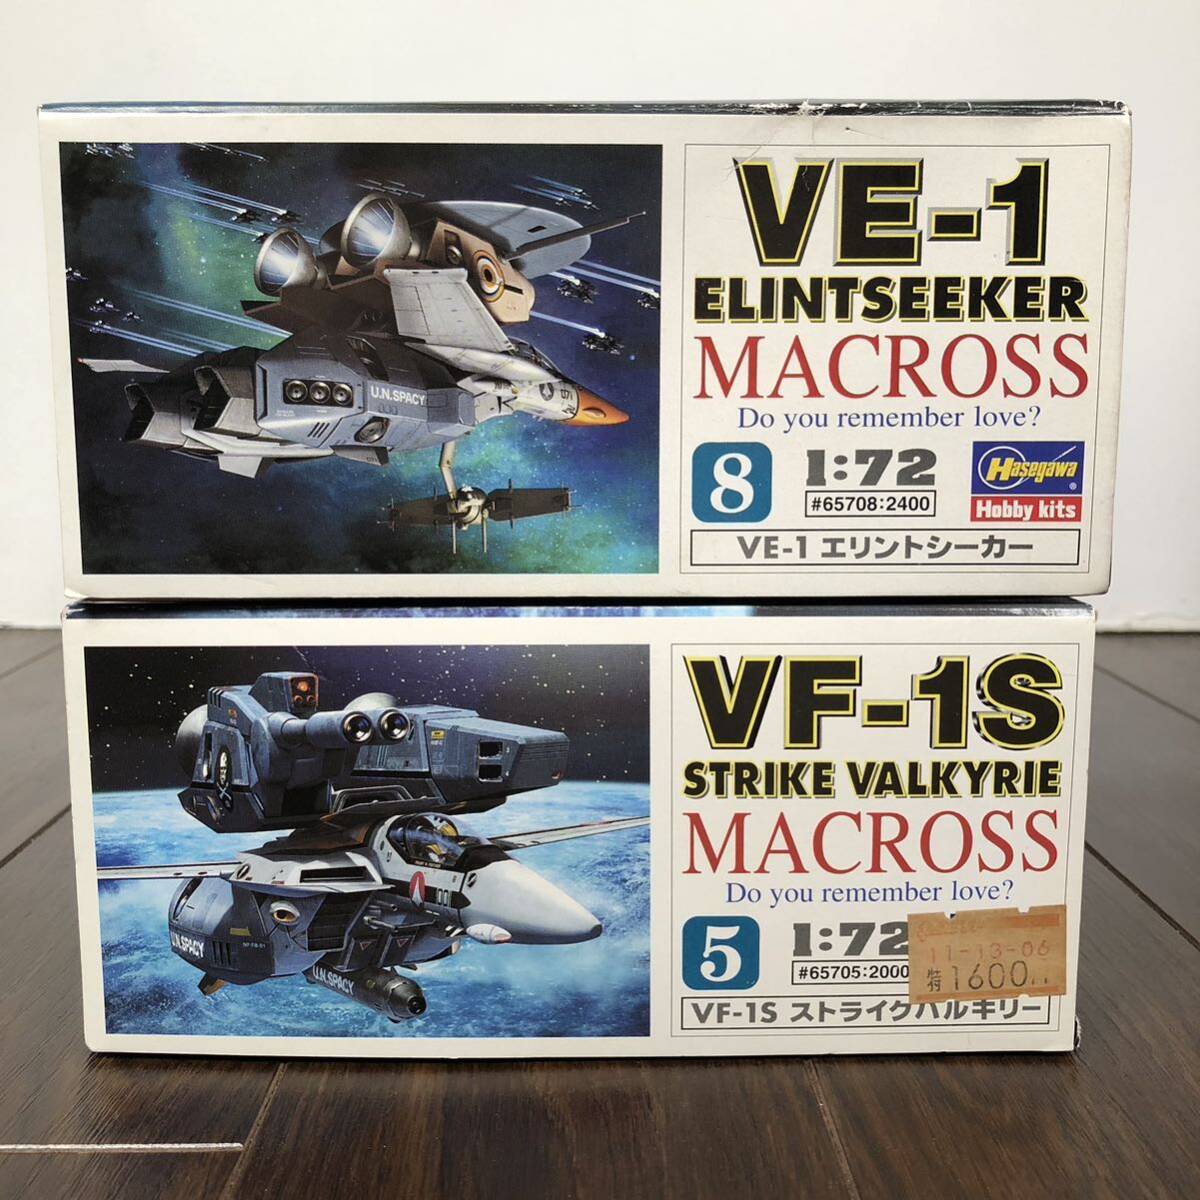 超時空要塞マクロス 愛・おぼえていますか 1/72 VE-1 エリントシーカー/VF-1S ストライクバルキリー 未組立 ハセガワ プラモデルの画像3